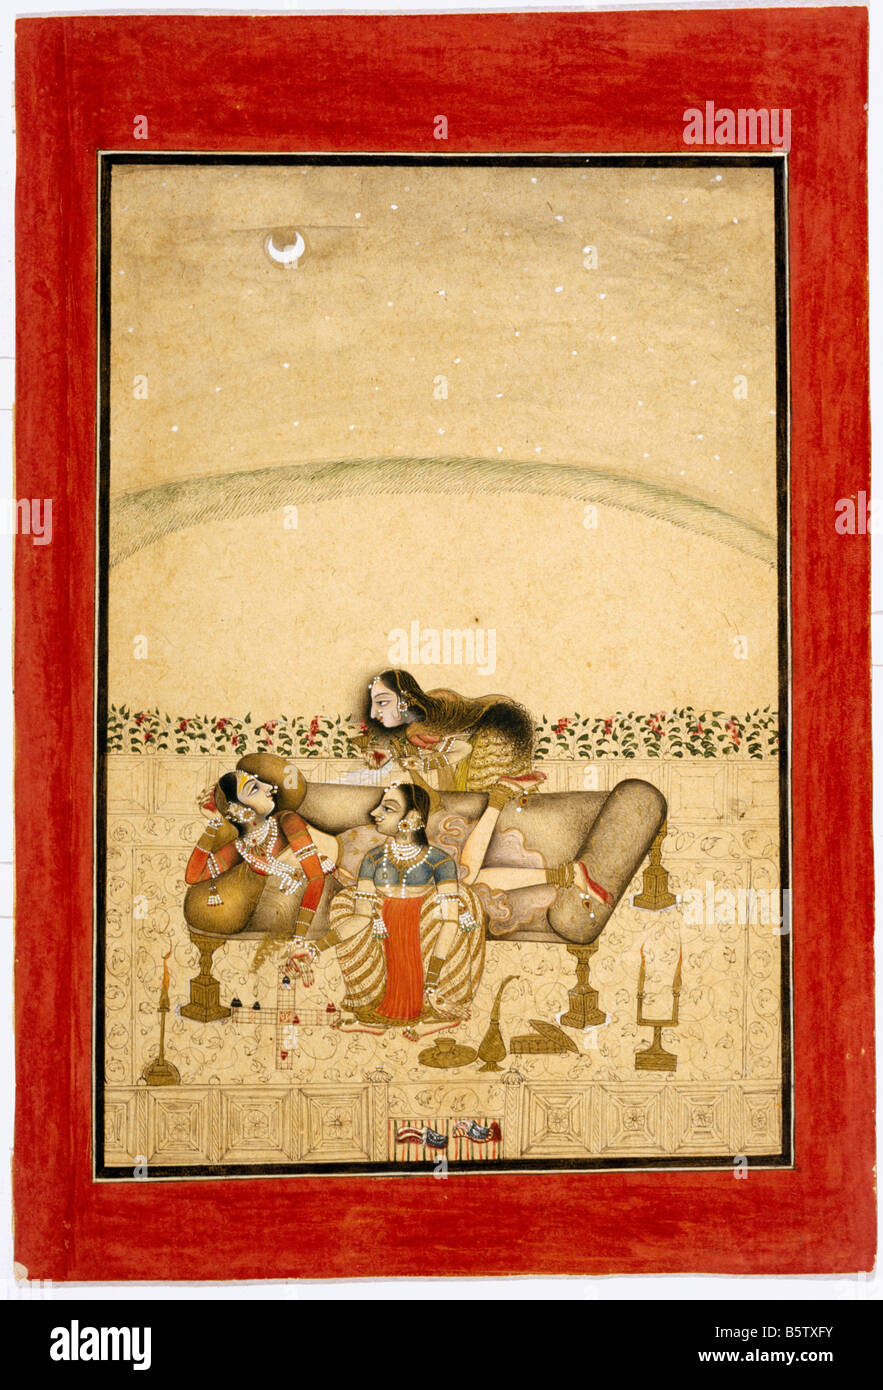 Prinzessin spielt Chaupad mit ihren Zofen bei Mondschein. Siyahqalam getönt. Bundi. 1750 Nationalmuseum New Delhi Indien 51,64/4 Stockfoto